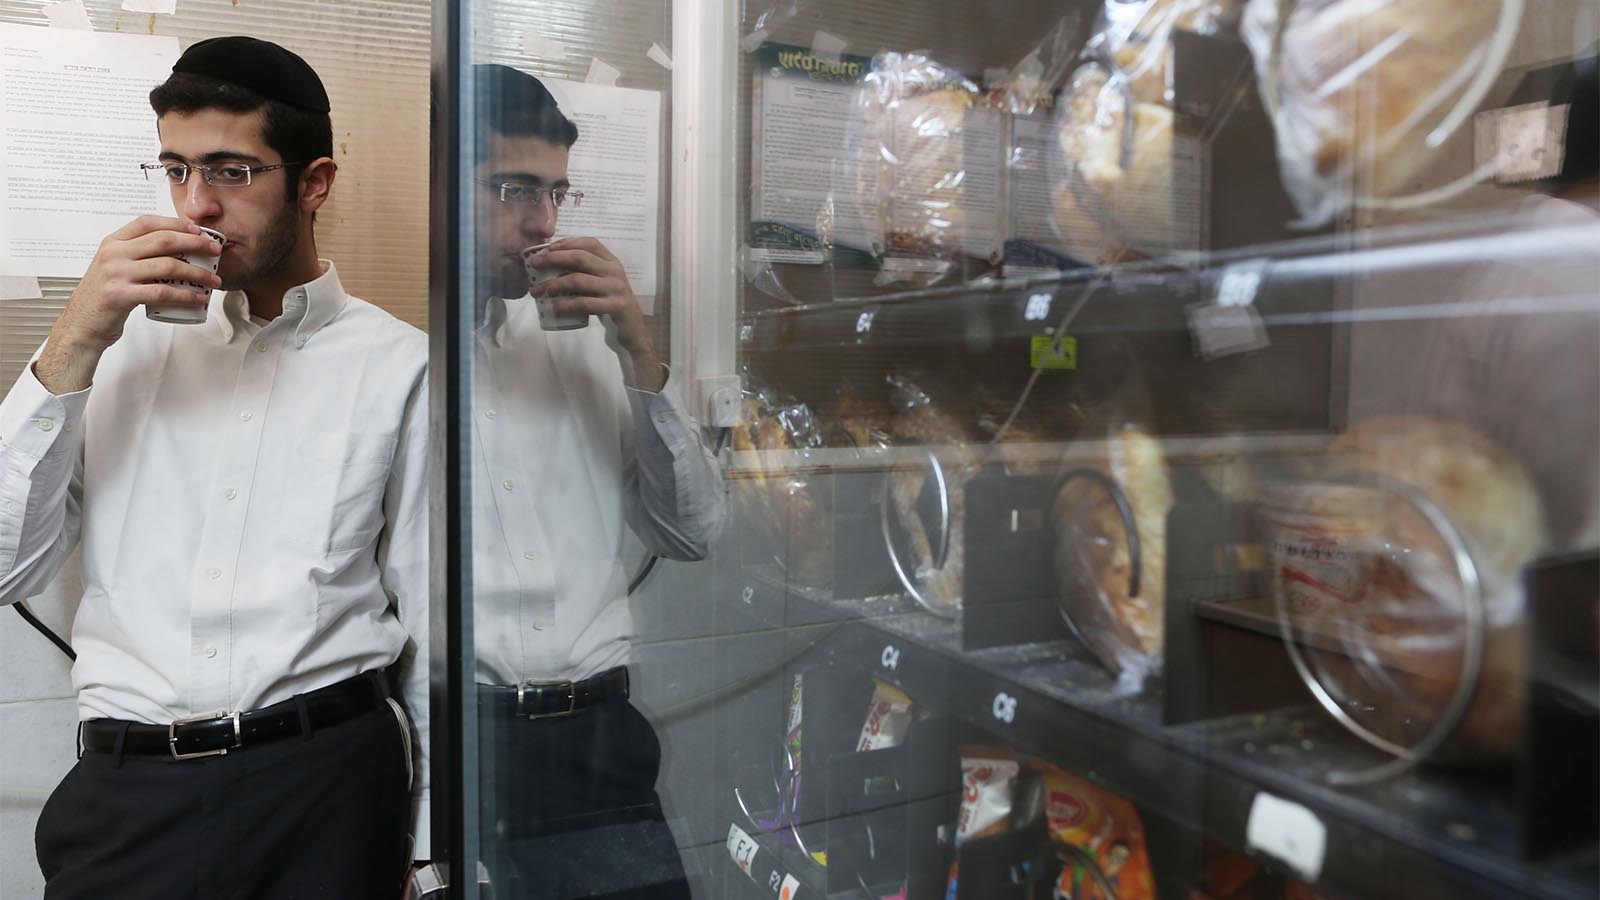 צעיר חרדי שותה ממכונת משקאות בישיבה בירושלים. למצולם אין קשר לכתבה (צילום: נתי שוחט/ פלאש90)